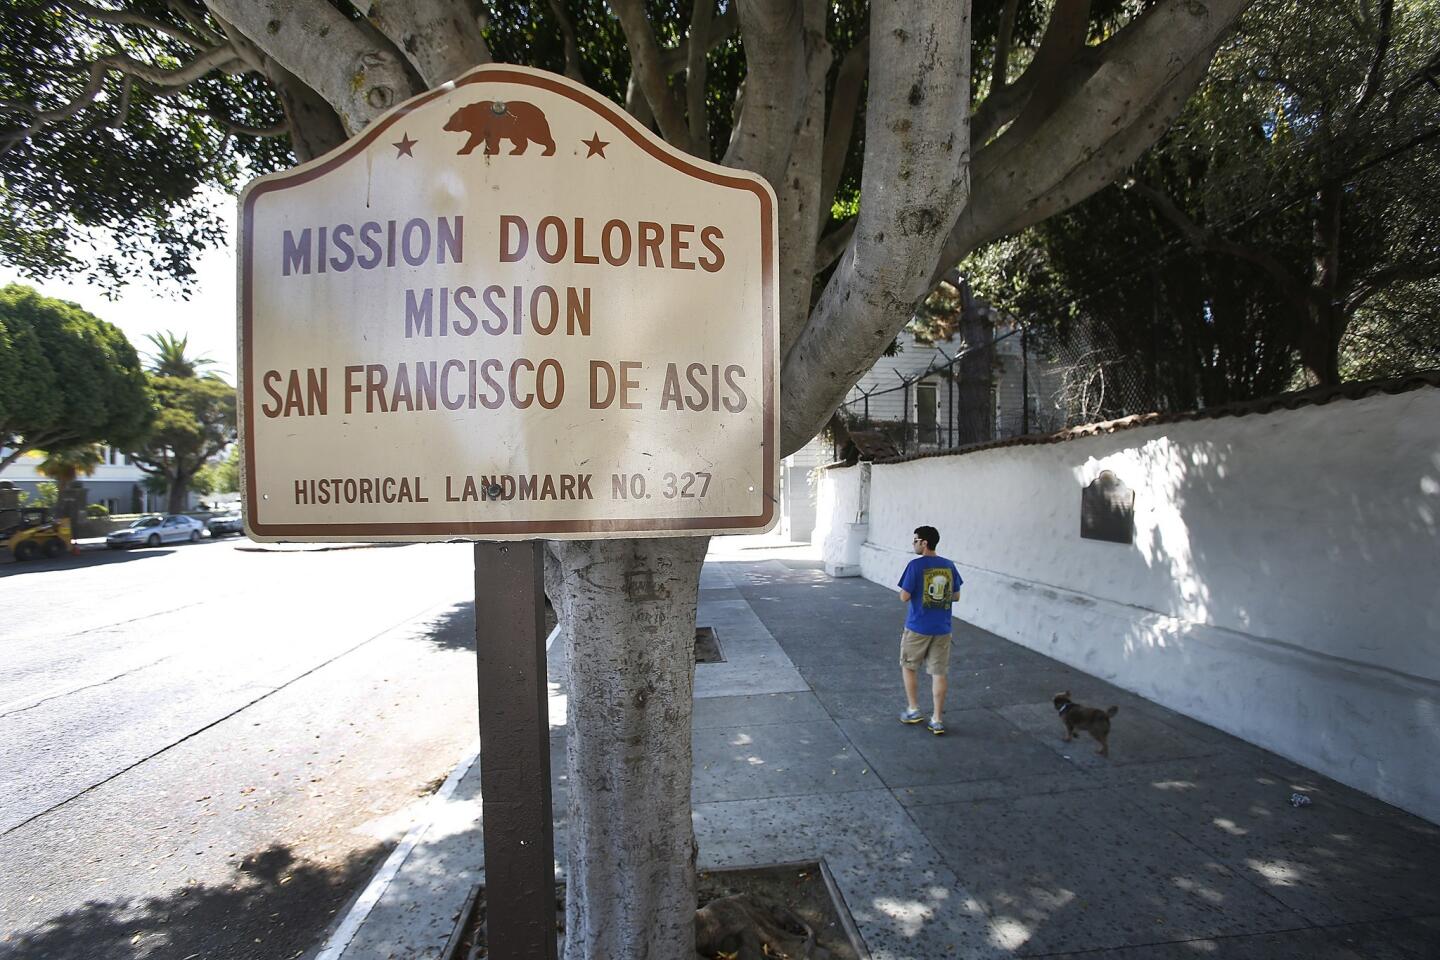 San Francisco de Asís (Mission Dolores), sixth mission, 1776